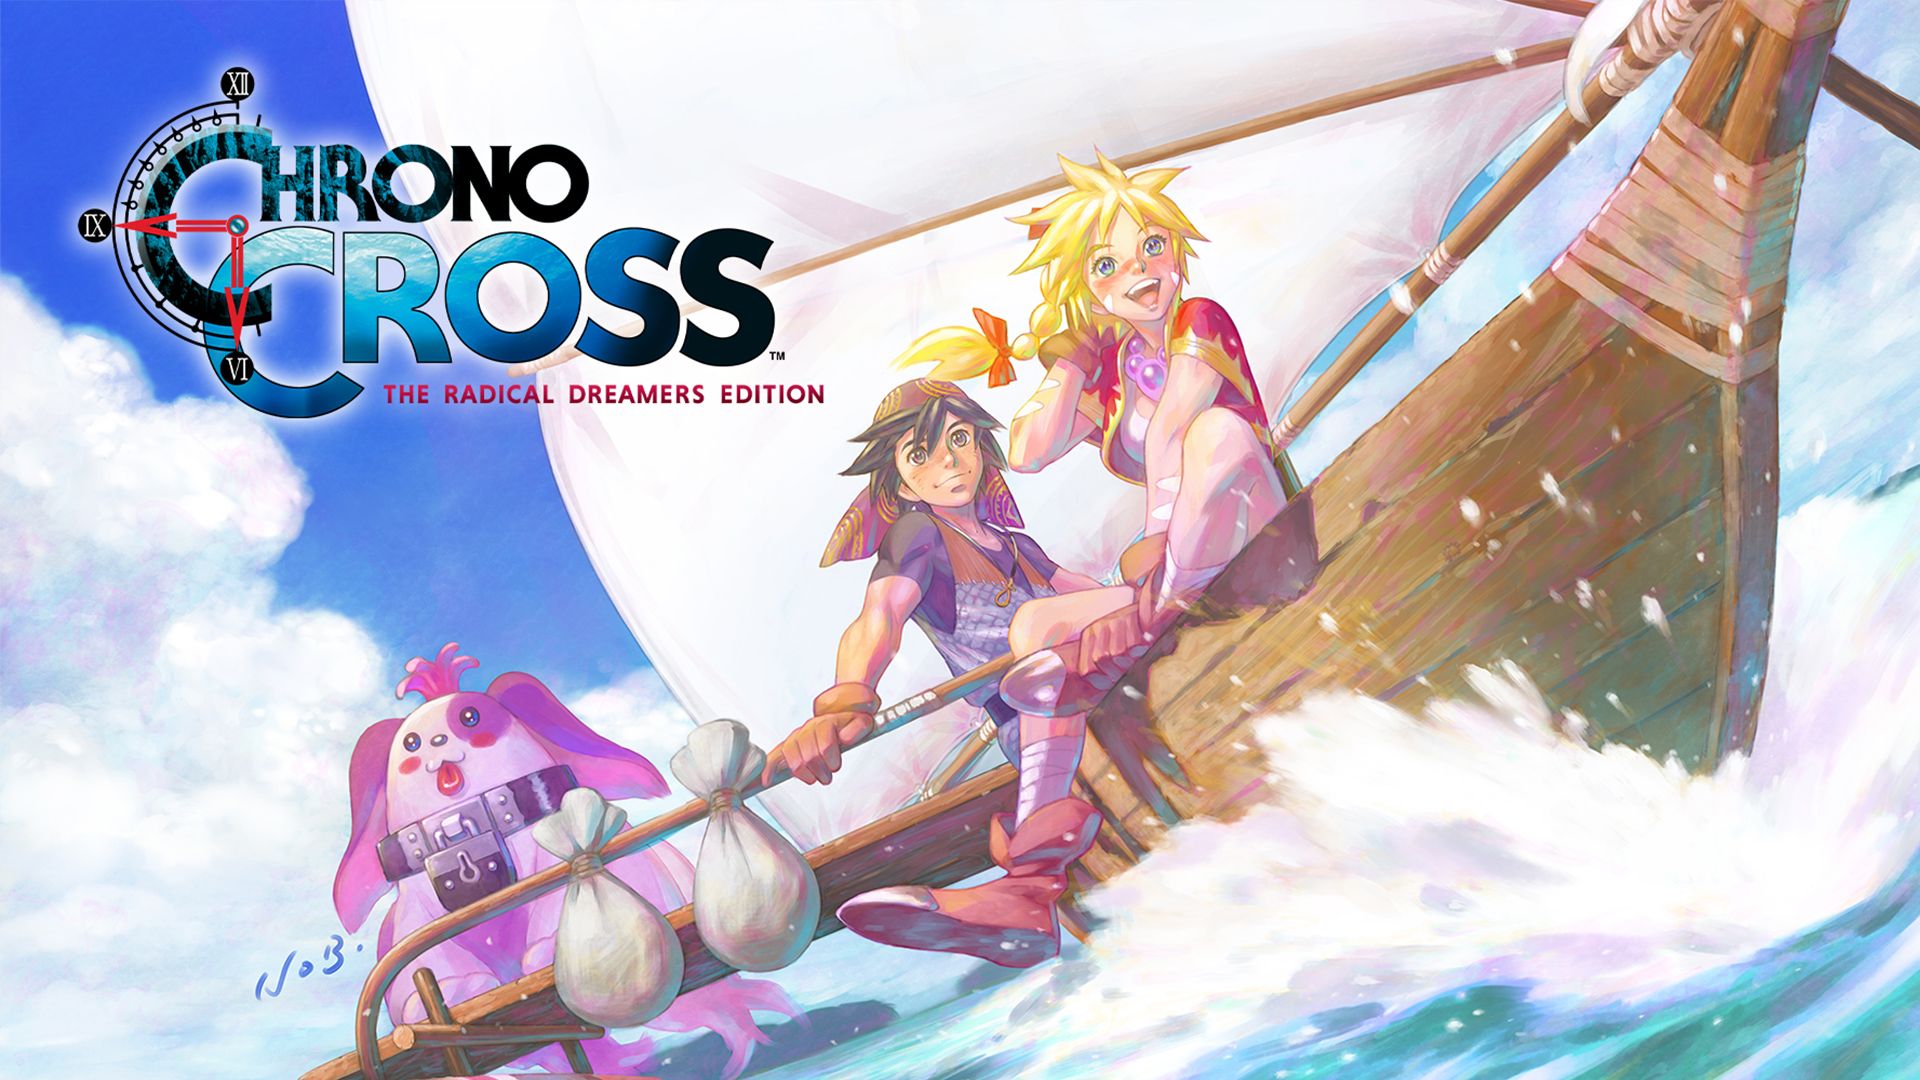 #Chrono Cross: So stehen die Chancen für eine Fortsetzung oder einen neuen Serienteil